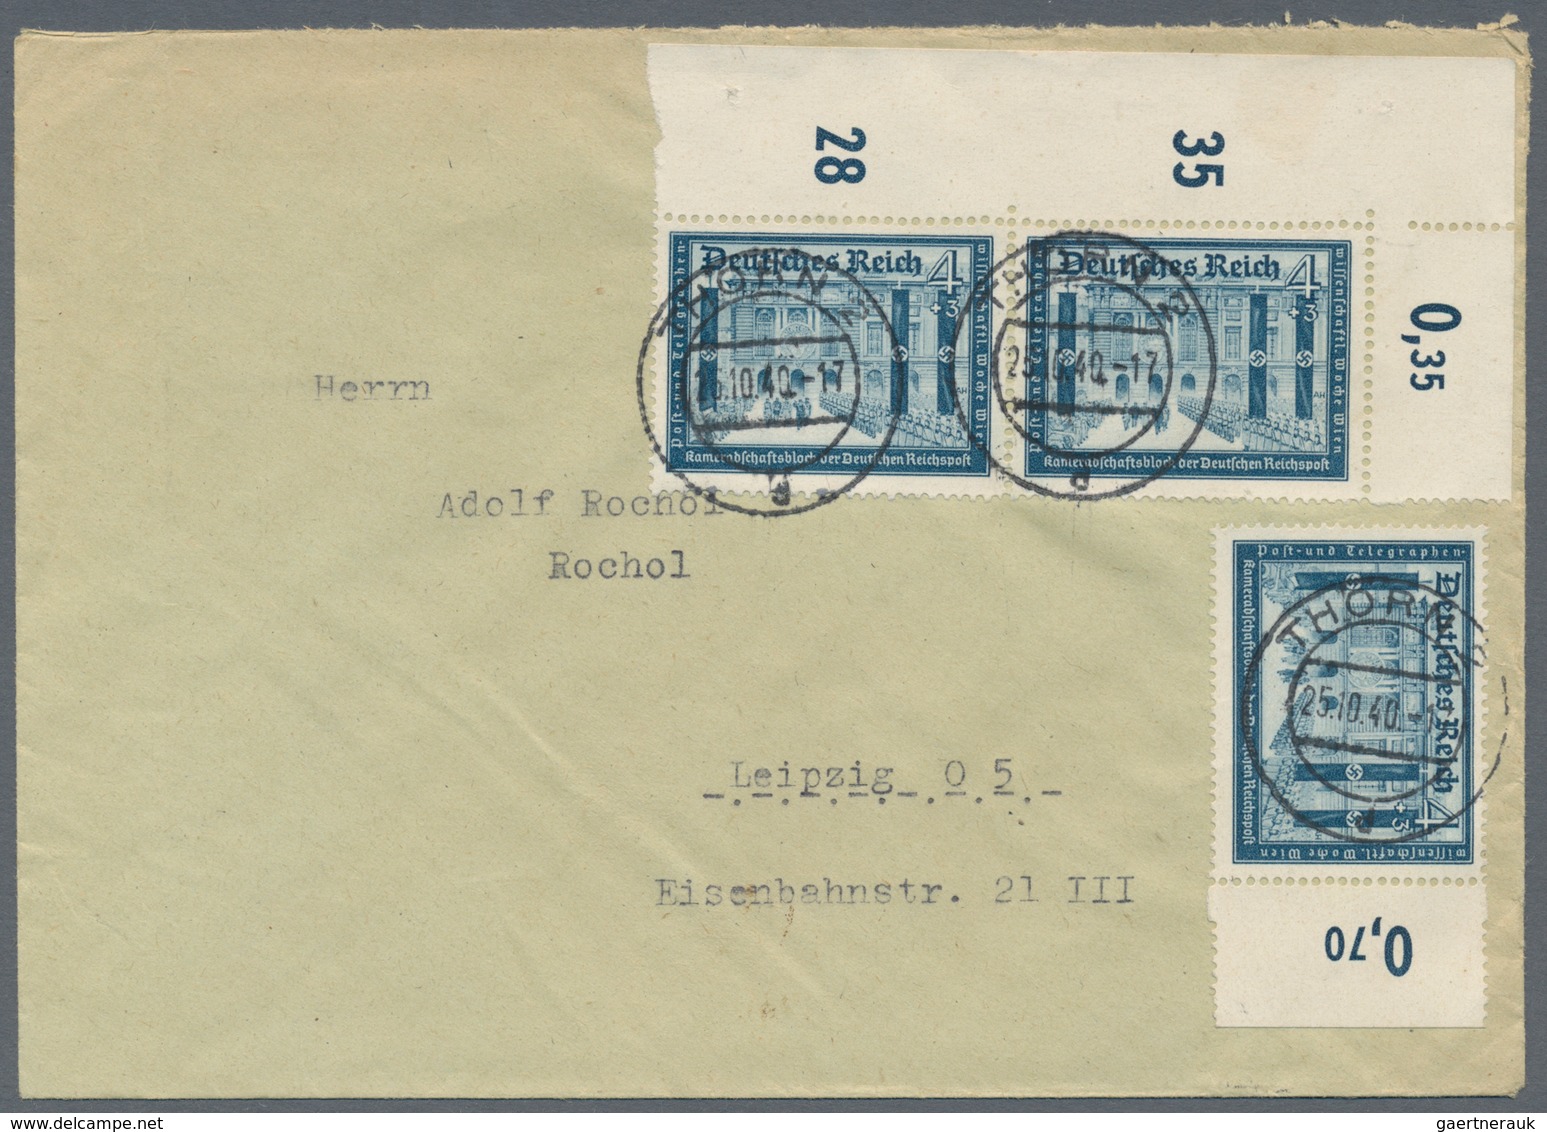 Deutsches Reich - 3. Reich: 1933/1945, umfassende Sammlung von ca. 1.250 Briefen und Karten, augensc